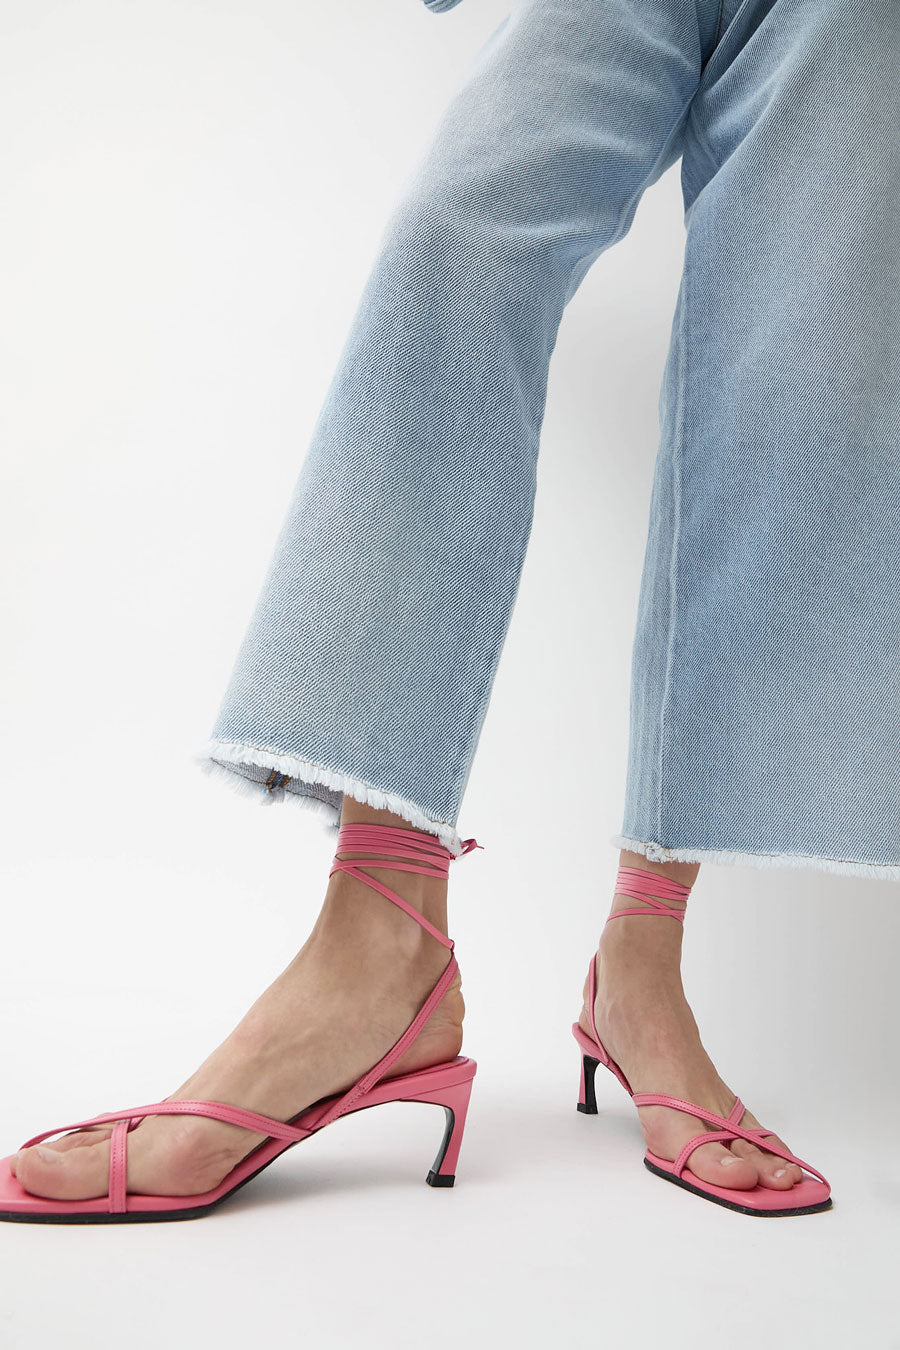 Reike Nen Meet Sandals in Pink